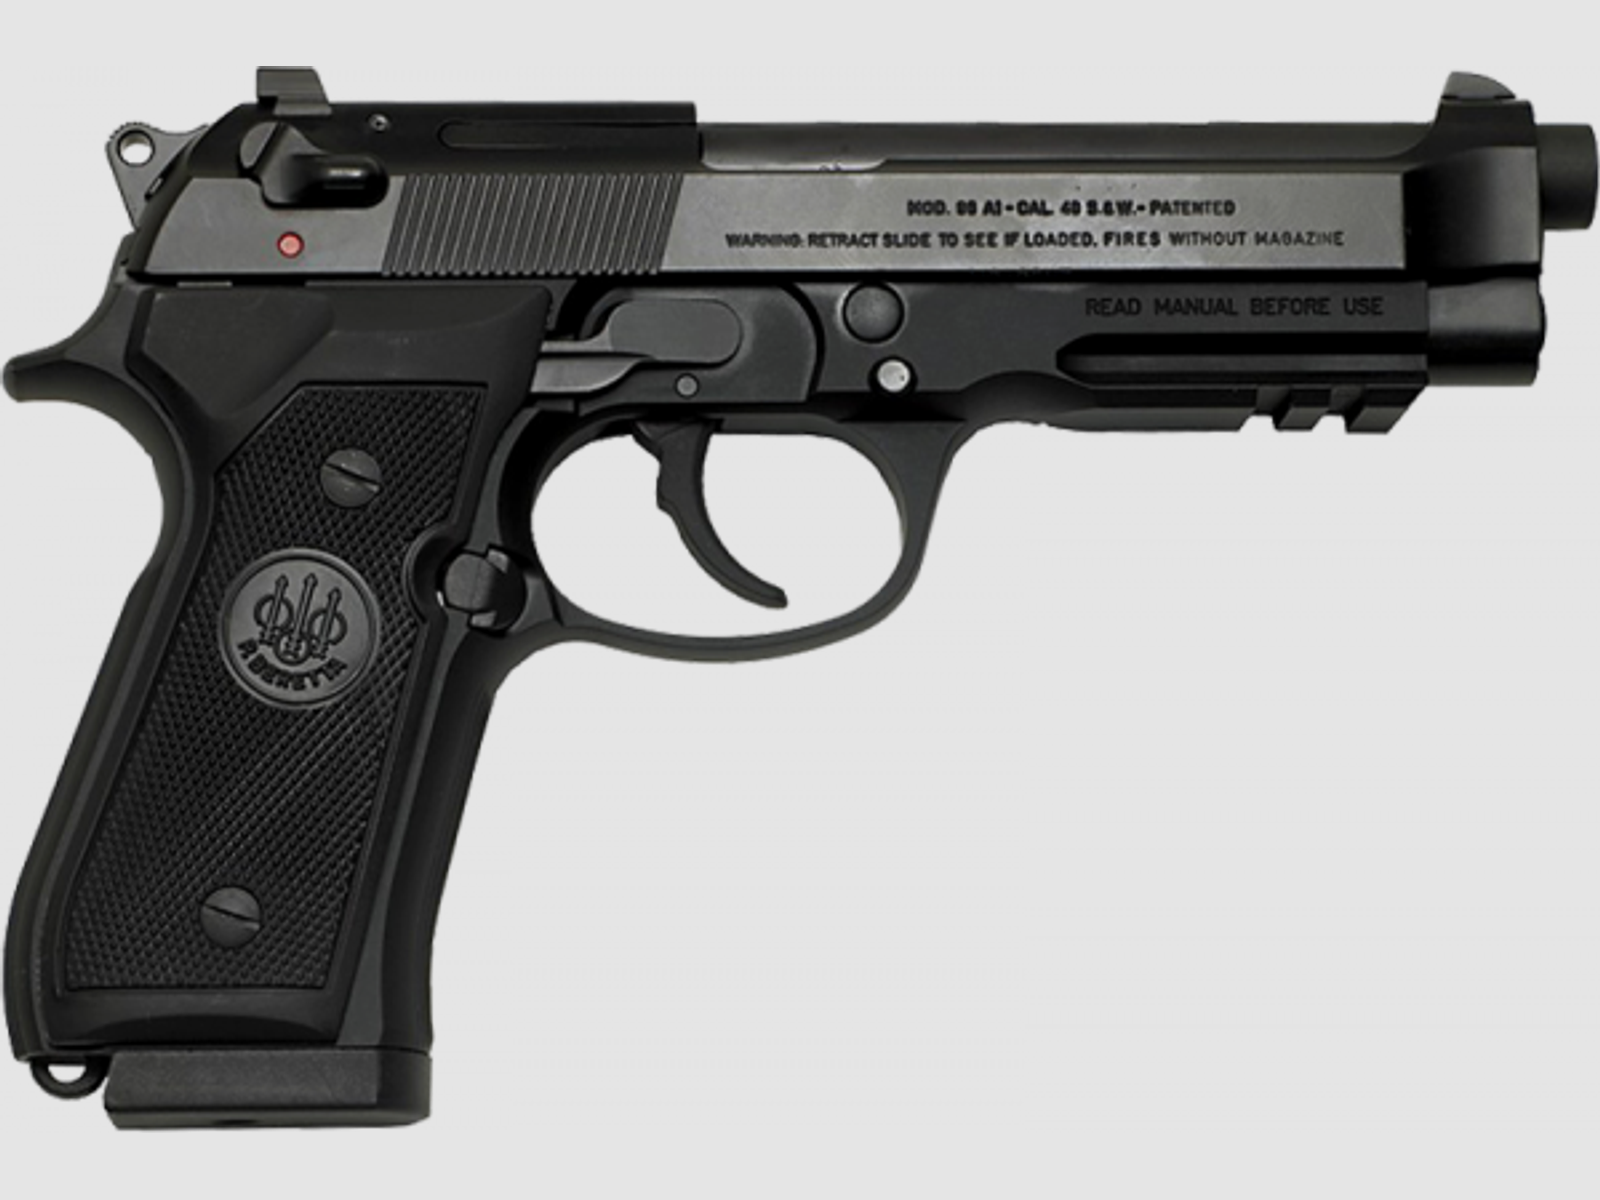 Beretta 96 A1 Pistole